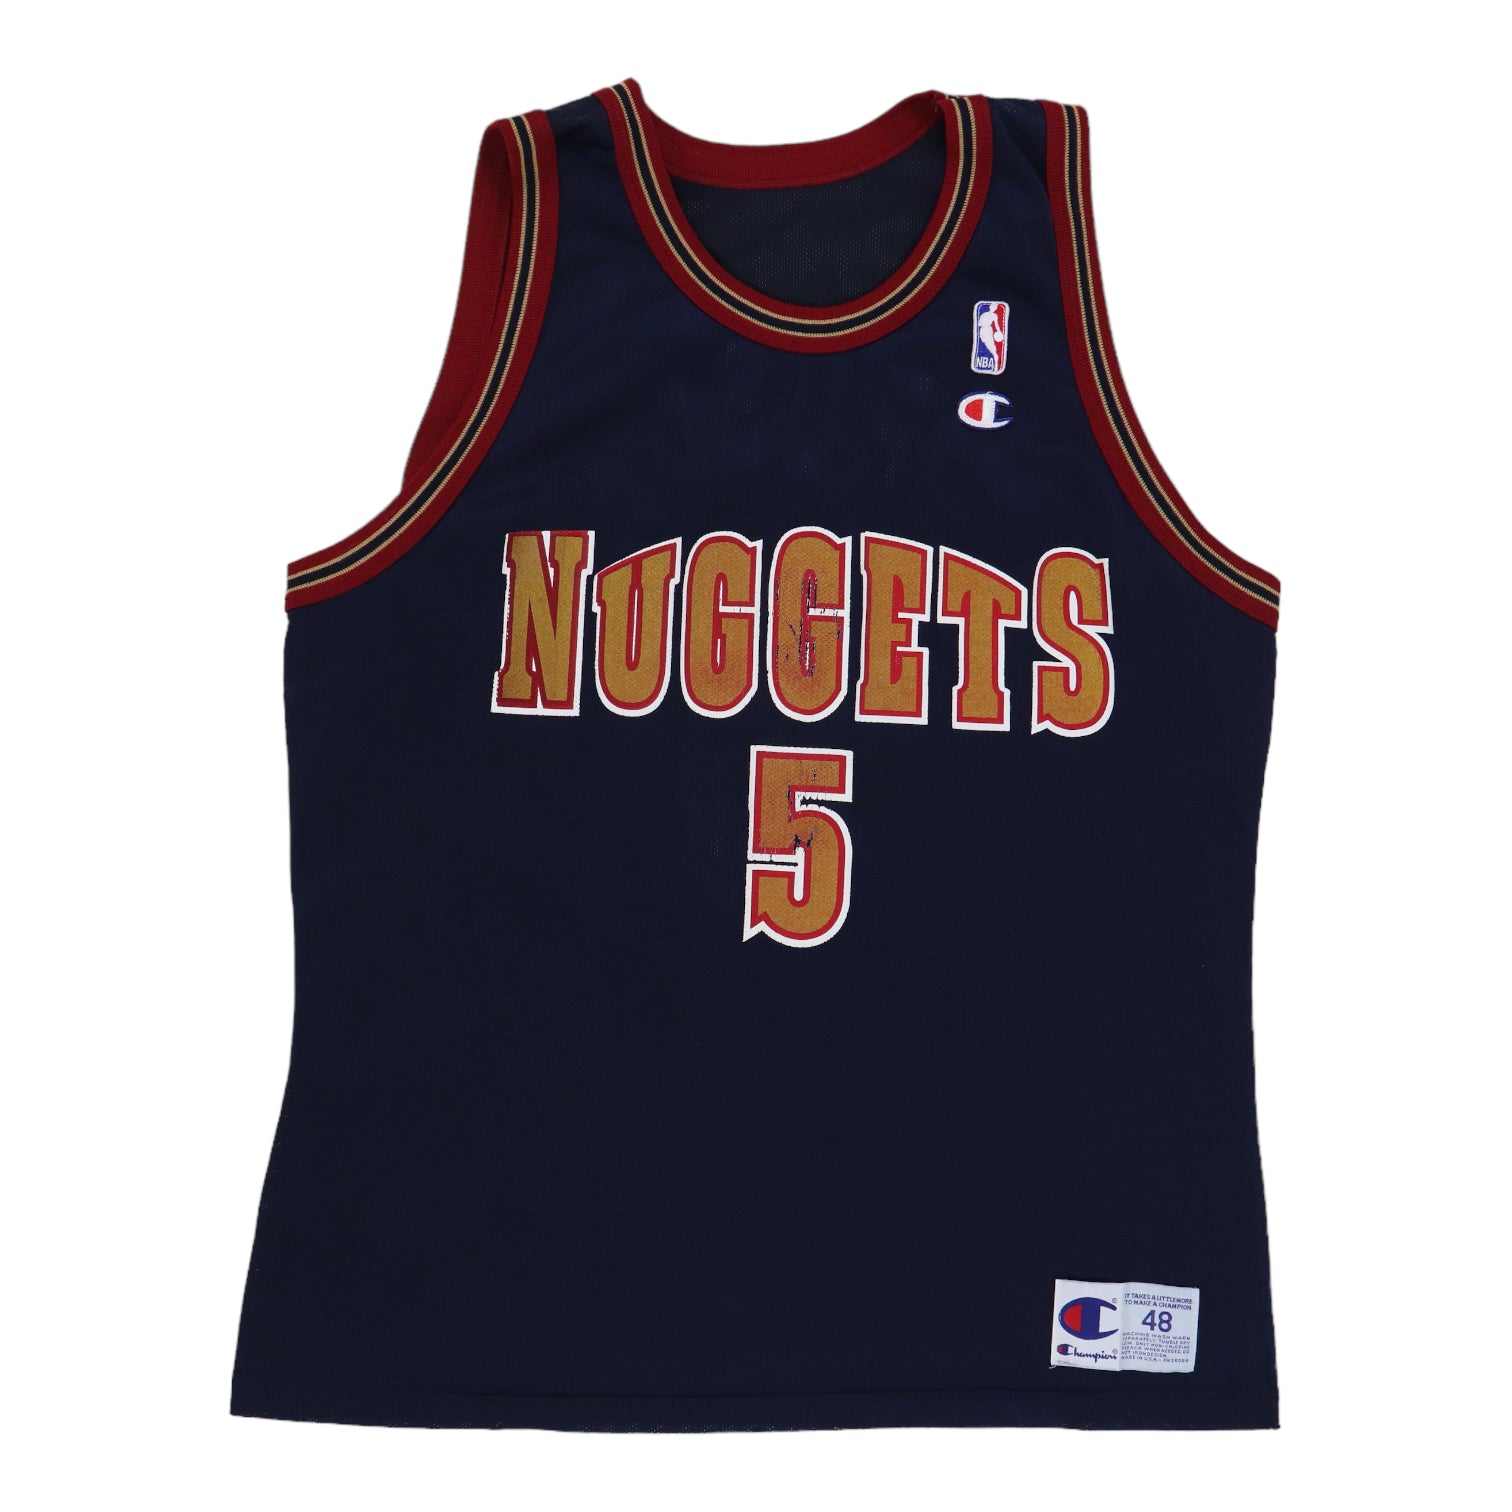 Wyco Vintage 1990s Jalen Rose Denver Nuggets NBA Basketball Jersey